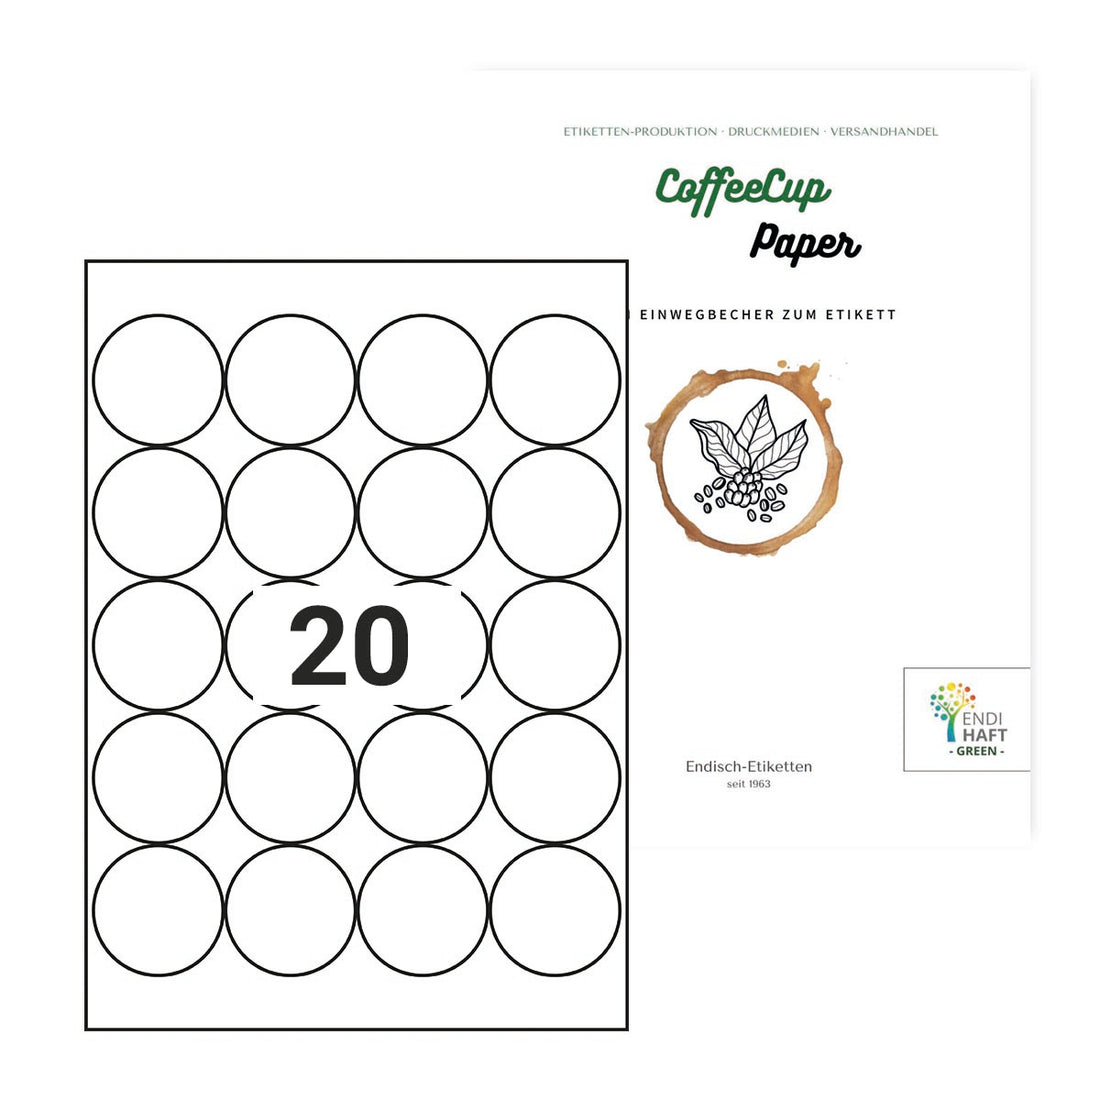 CoffeeCup Paper, 50 mm rund mit 20 Nutzen auf DIN A4 Bögen